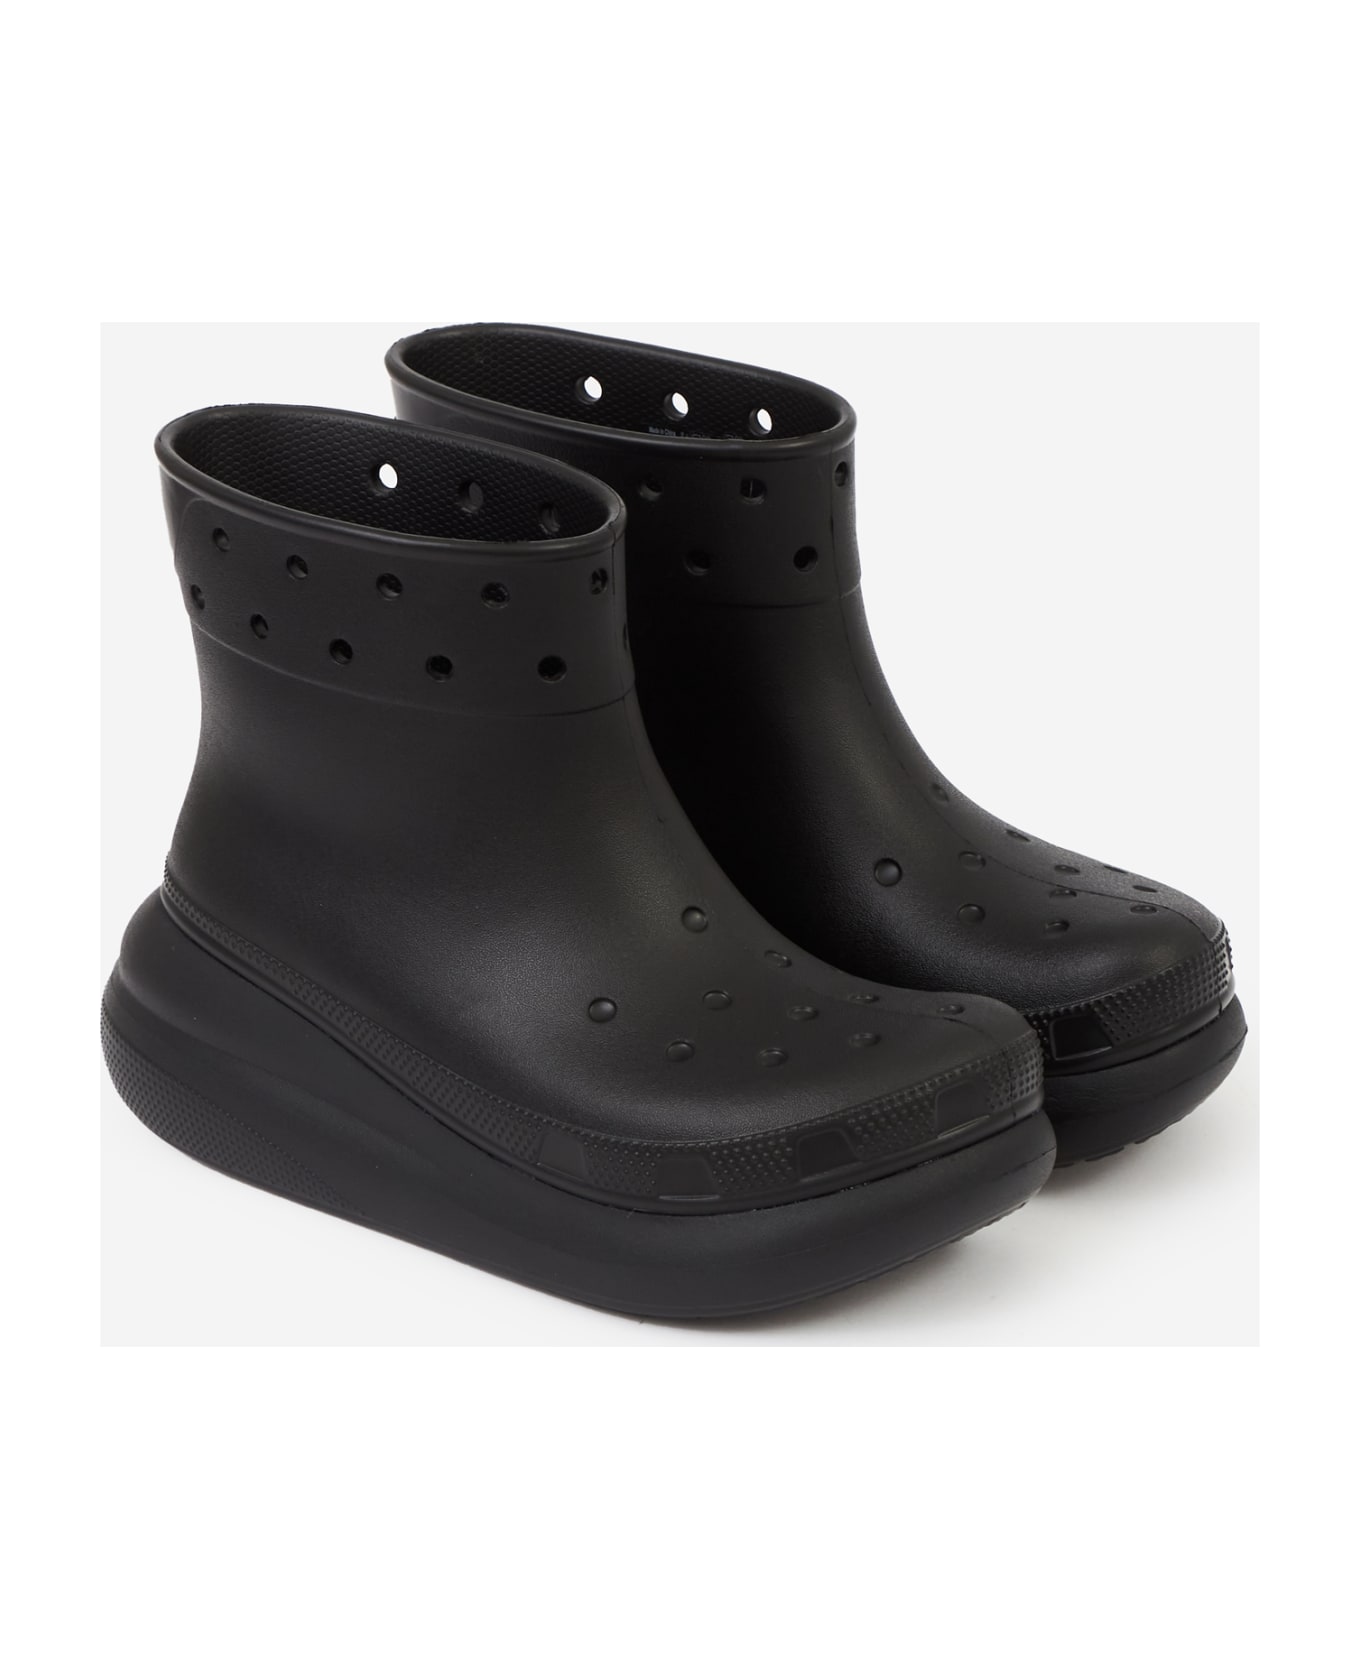 Crocs Crush Rain Boot Boots - black ブーツ